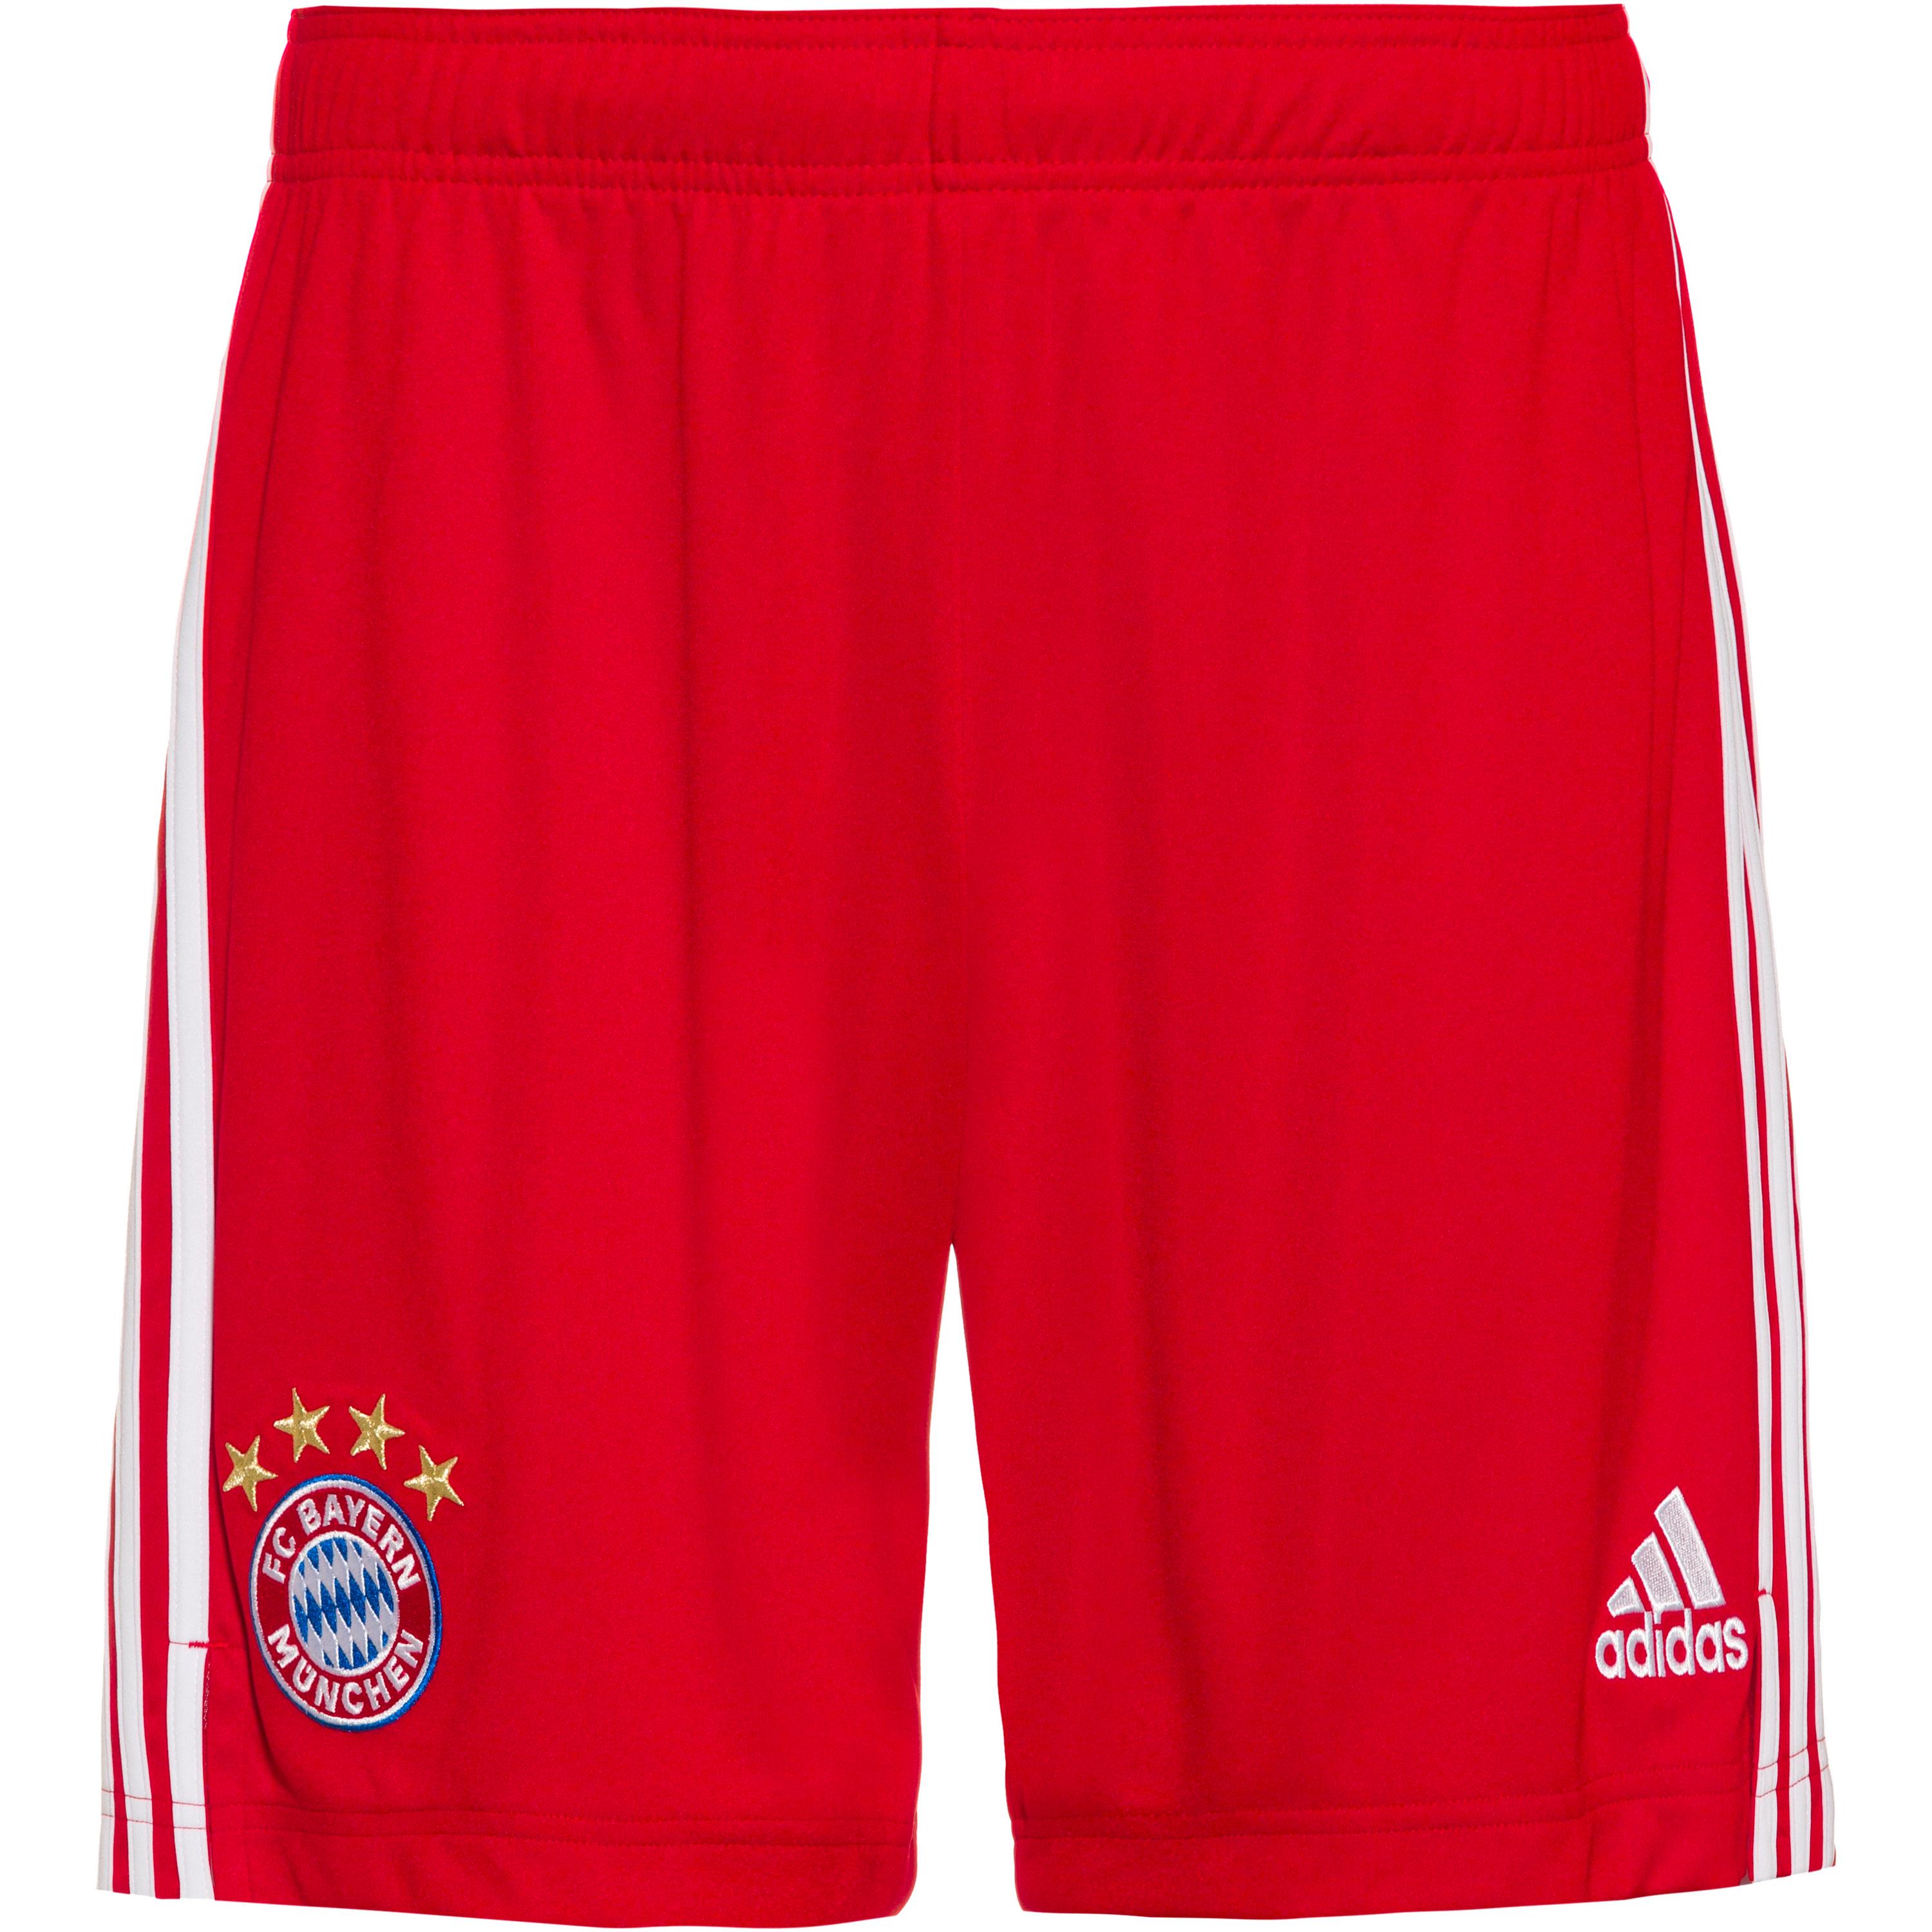 Image of adidas FC Bayern 20/21 Heim Fußballshorts Herren